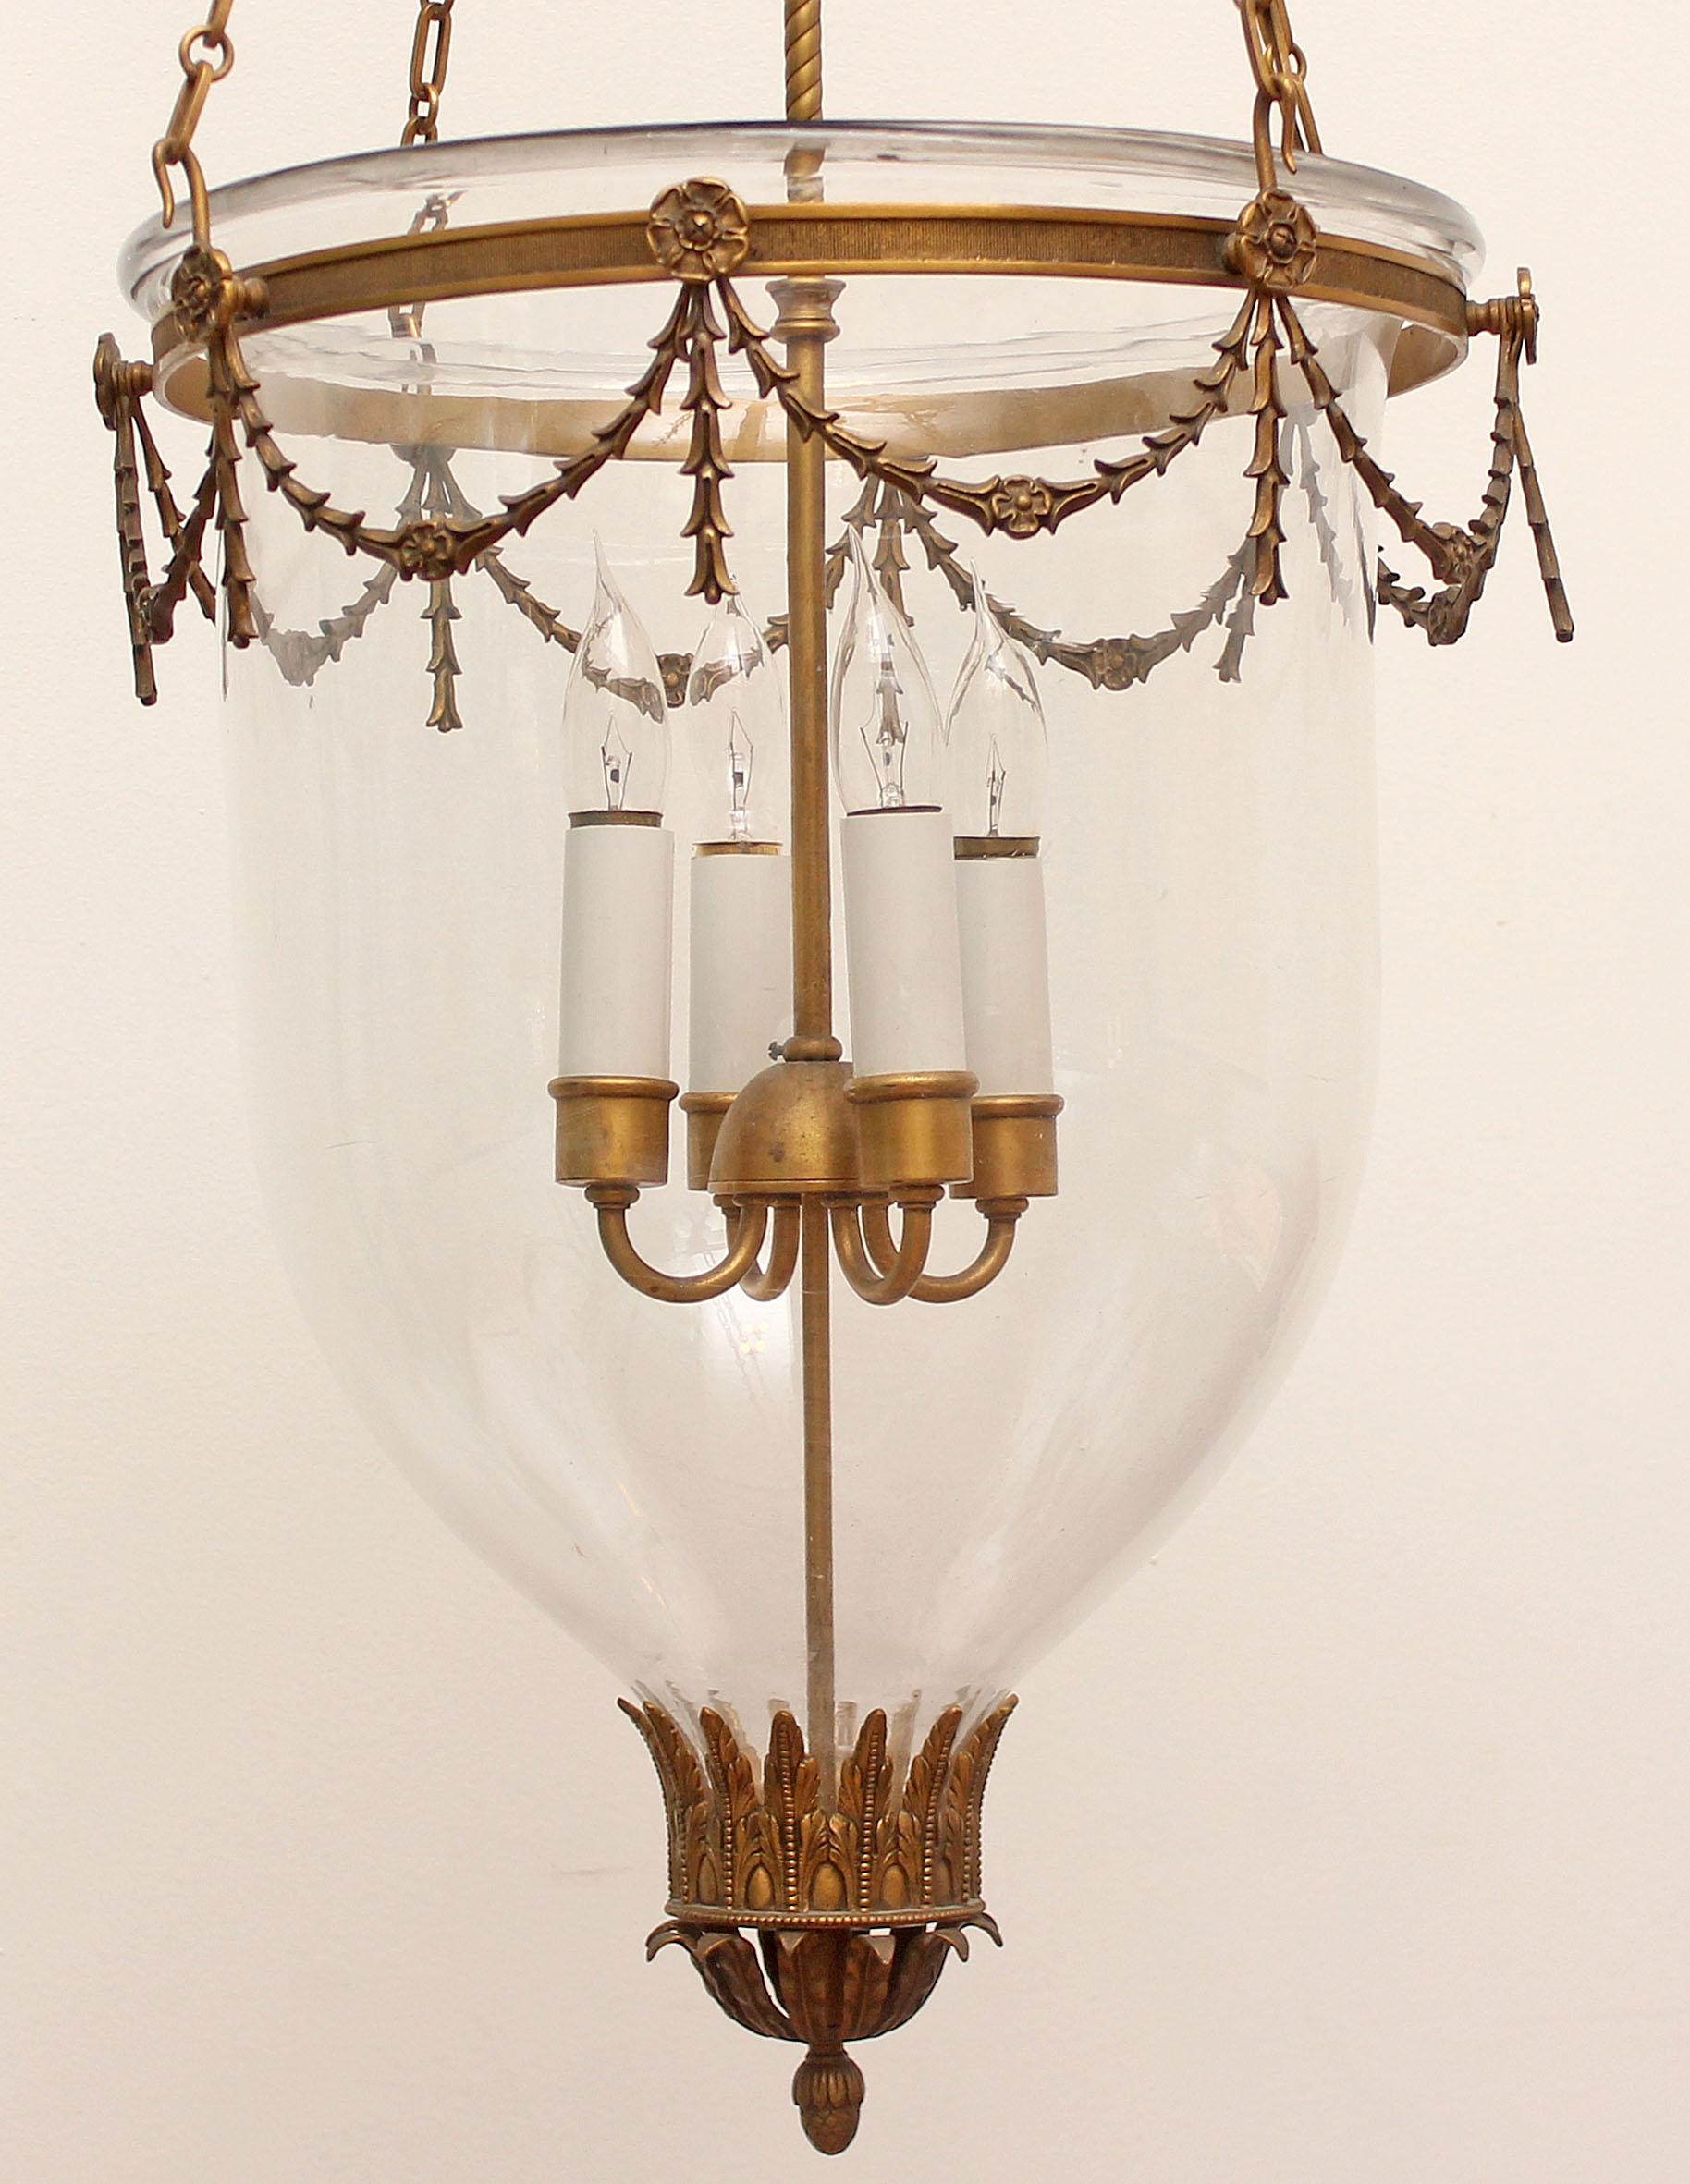 Lanterne suspendue en forme de cloche en bronze doré. Meilleure qualité. Chaîne supplémentaire de 30